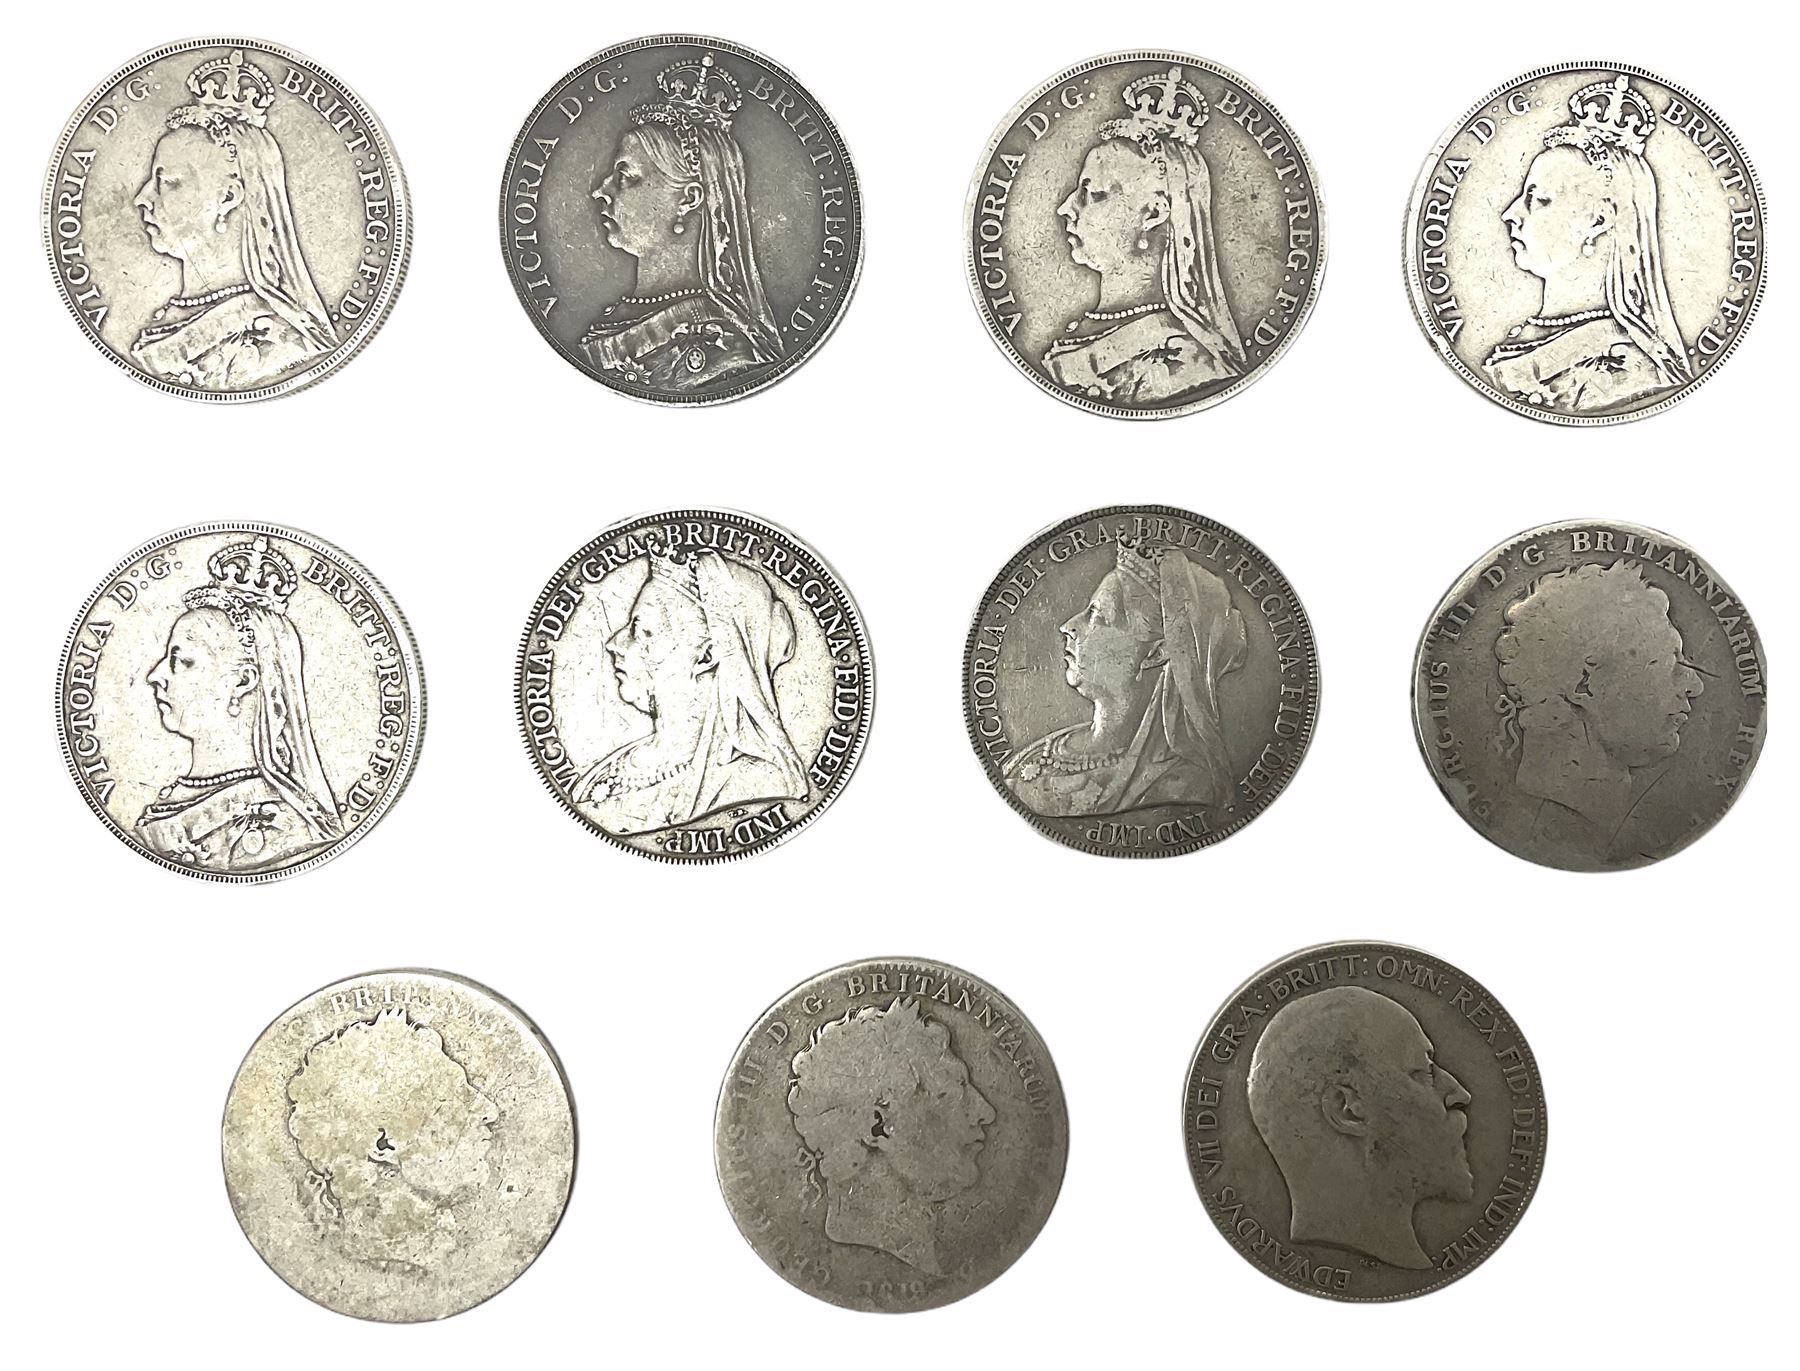 Eleven Great British crown coins